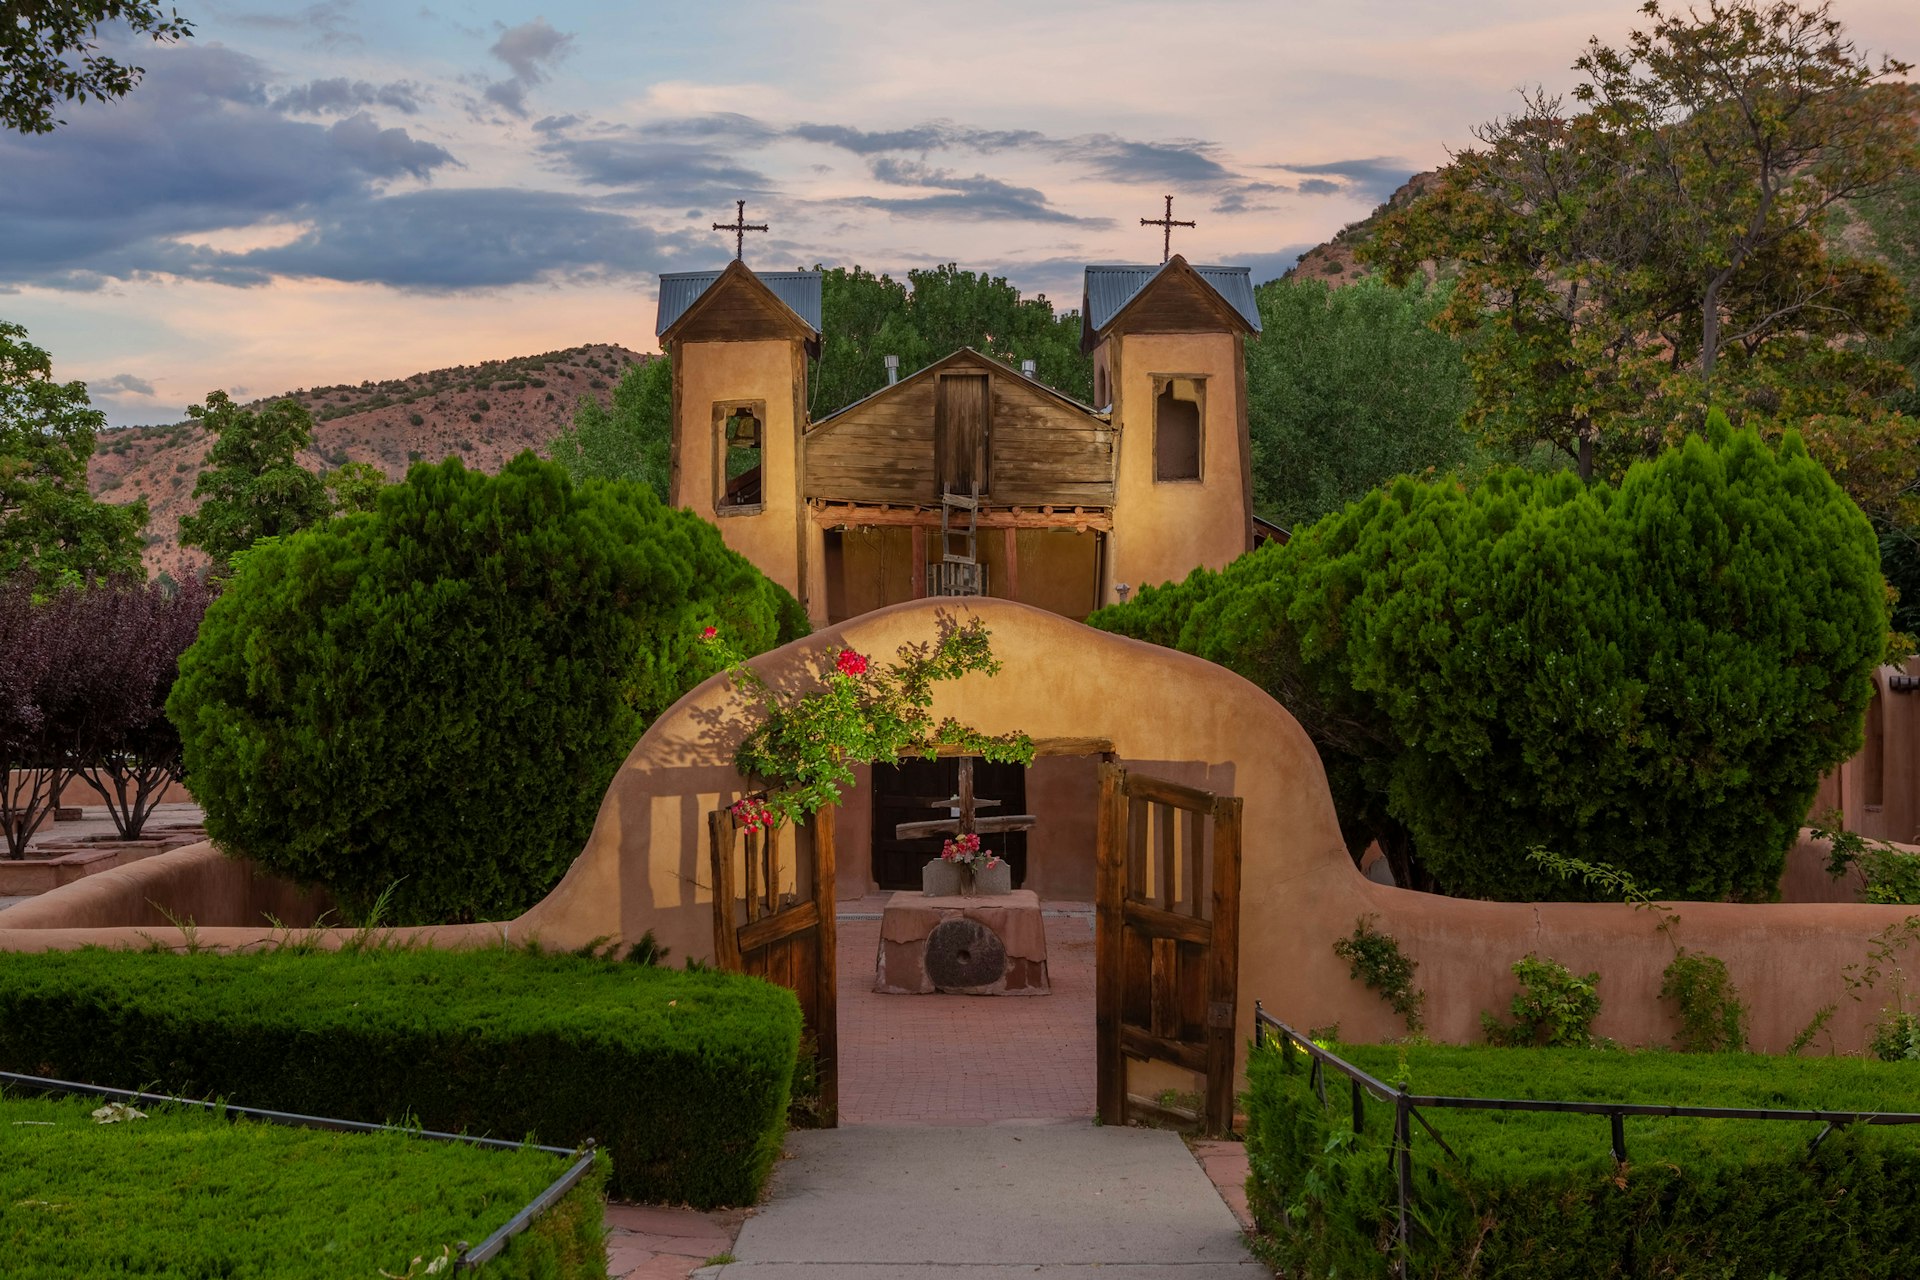 Entrance to El Santuario de Chimayo in Chimayo, New Mexico